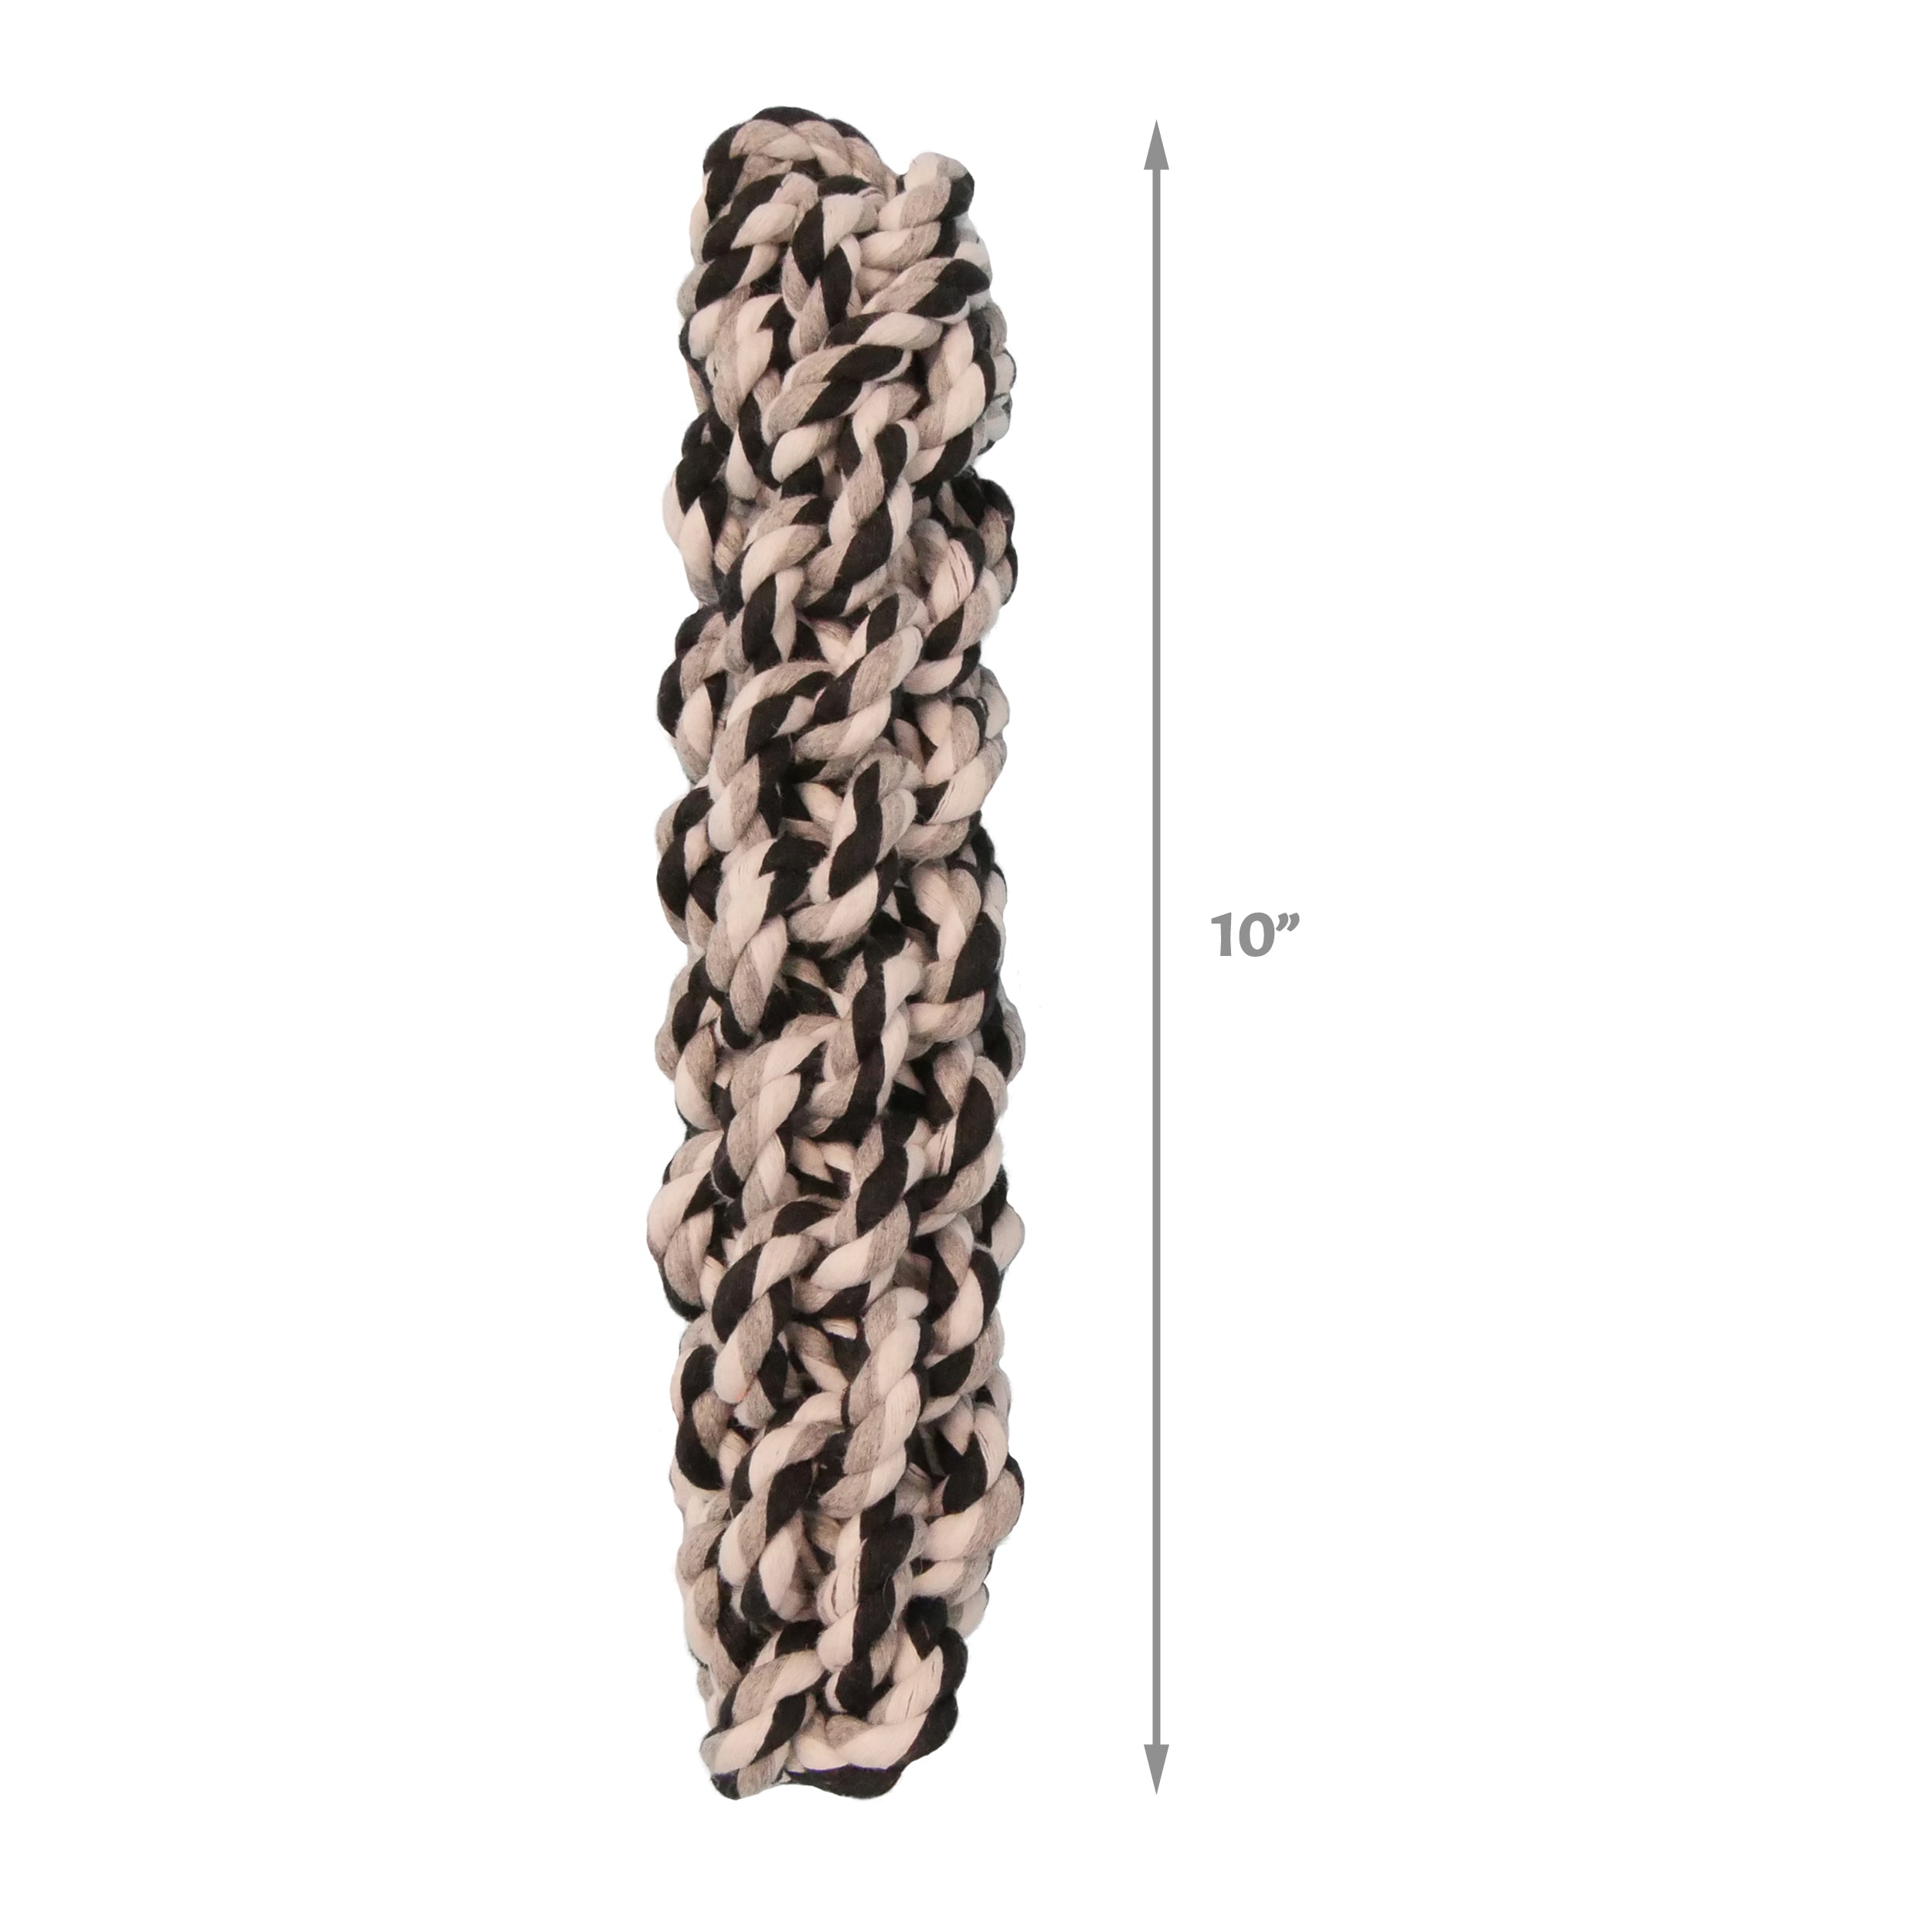 [Dog toy] 2-Sizes Braided Cotton Rope Tug Stick